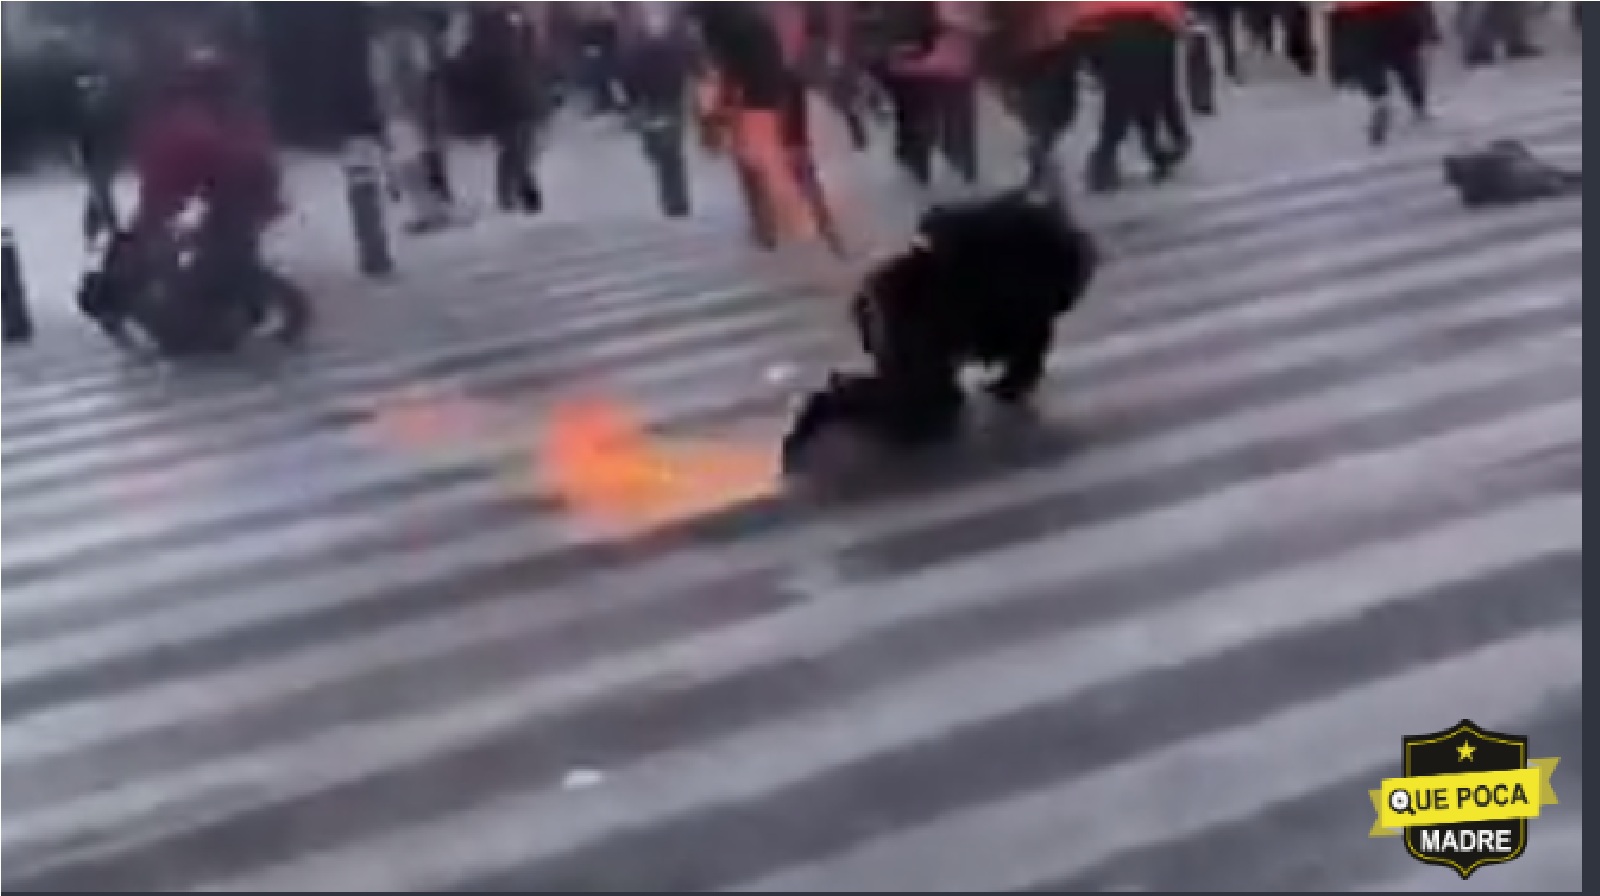 Video: Tras lanzar bomba Molotov contra la policía, se aprecia a 3 Feministas en LLAMAS